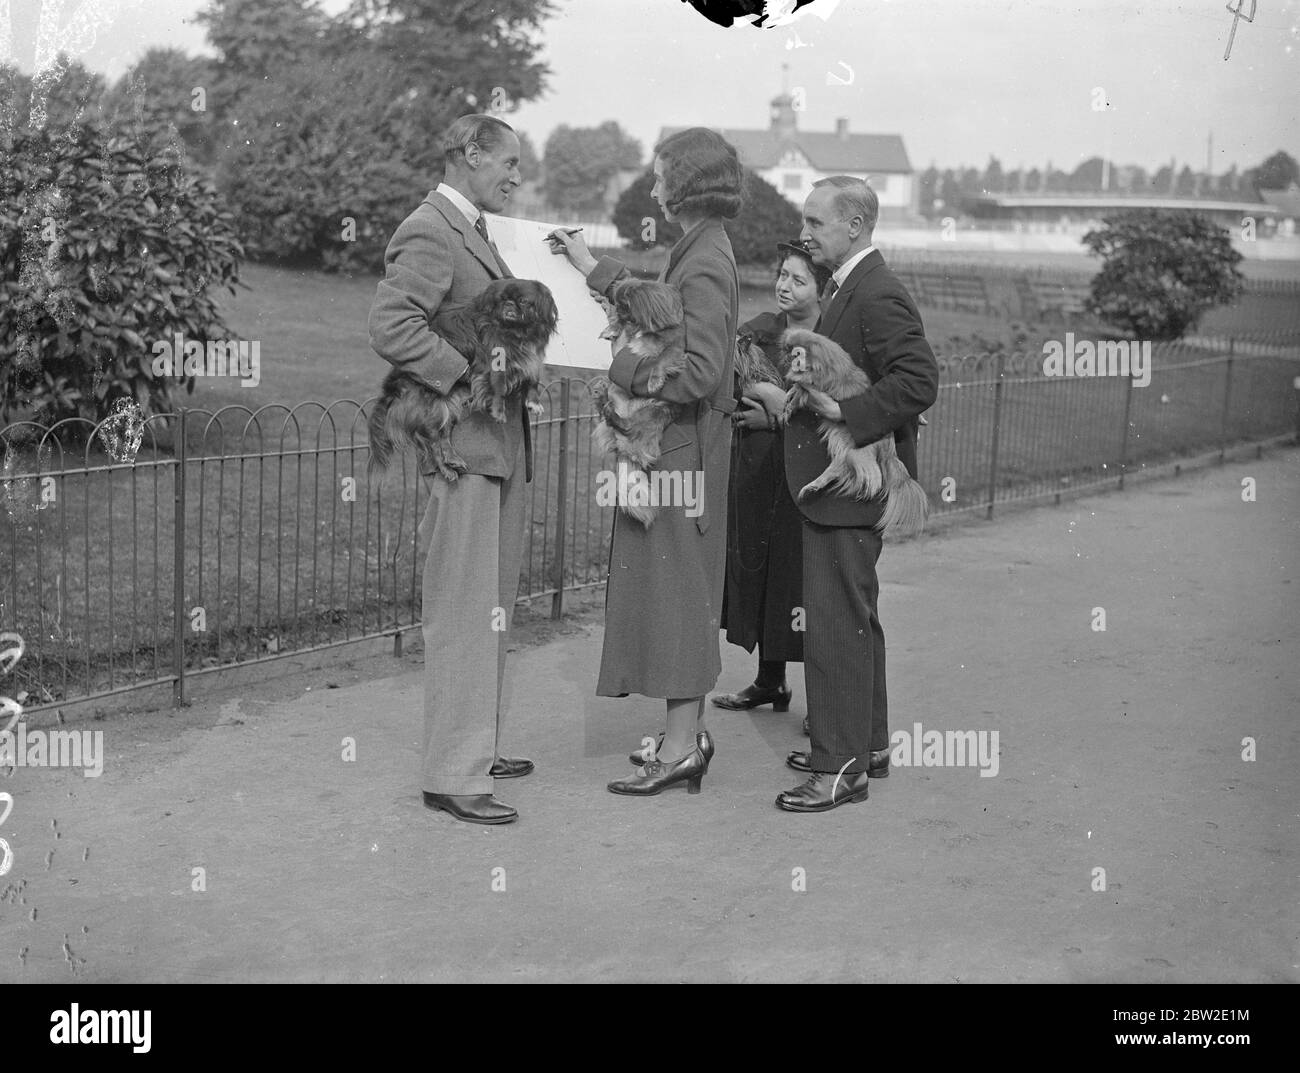 Hundebesitzer unterschreiben die Petition von F.W Donisthorpe vor den Gärten von Paddington, London. Hunde sind in den Gärten verboten, es sei denn, sie sind an der Leine. F.W Donisthorpe, der berühmte Tennisspieler, hat einen Streichen in Angriff genommen, um das Verbot aufzuheben. Seine erste Auflage wurde vom rat abgelehnt. 24 Juli 1937 Stockfoto